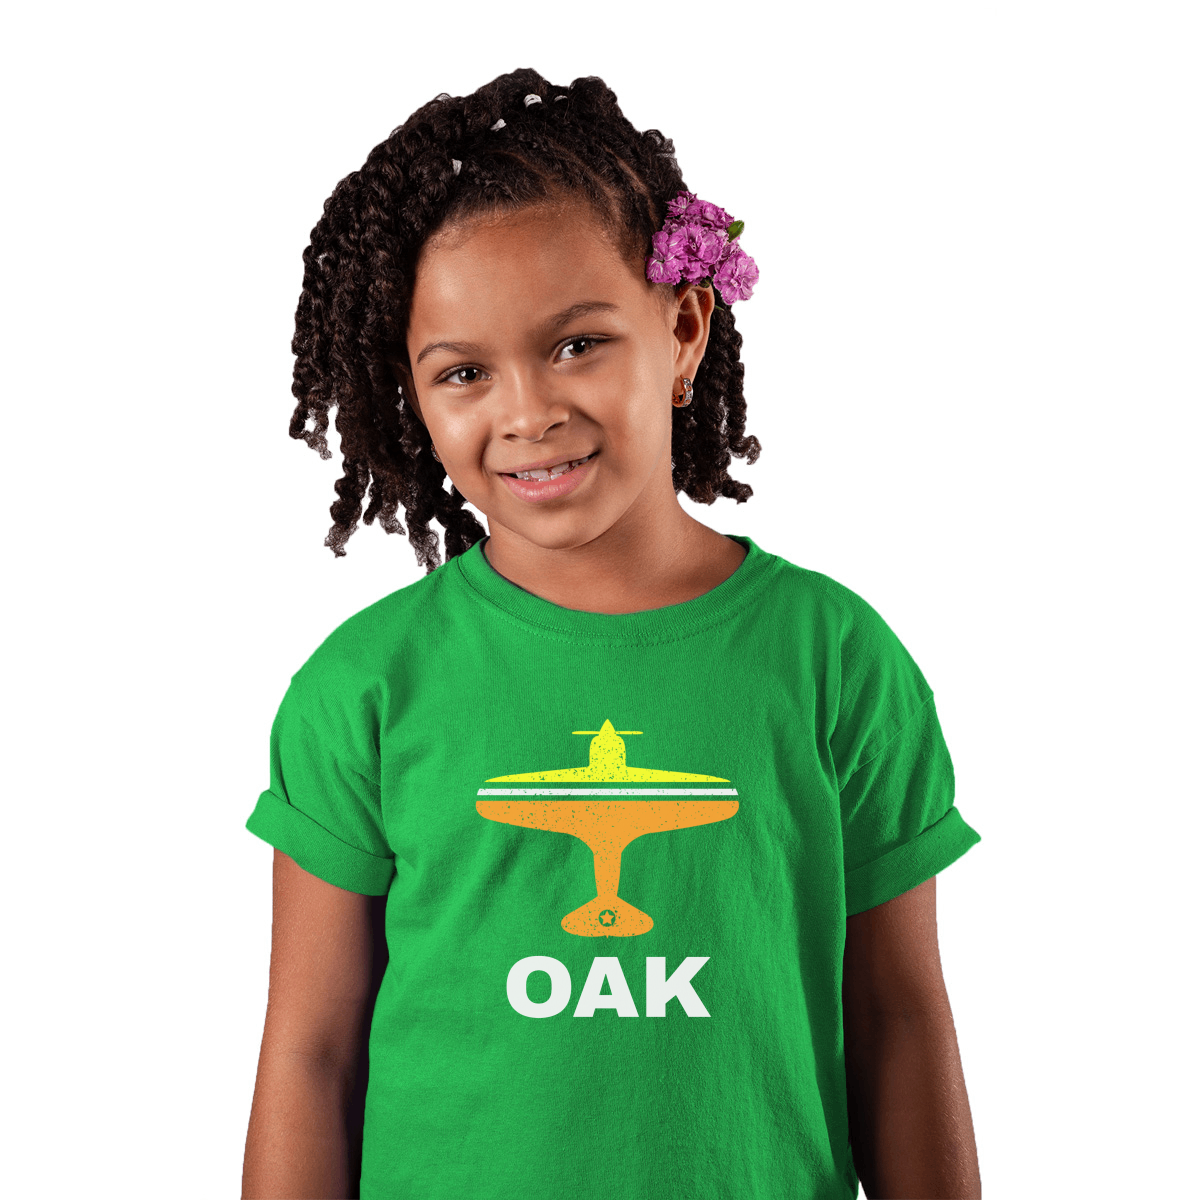 Fly Oakland OAK Airport Kids T-shirt | Green